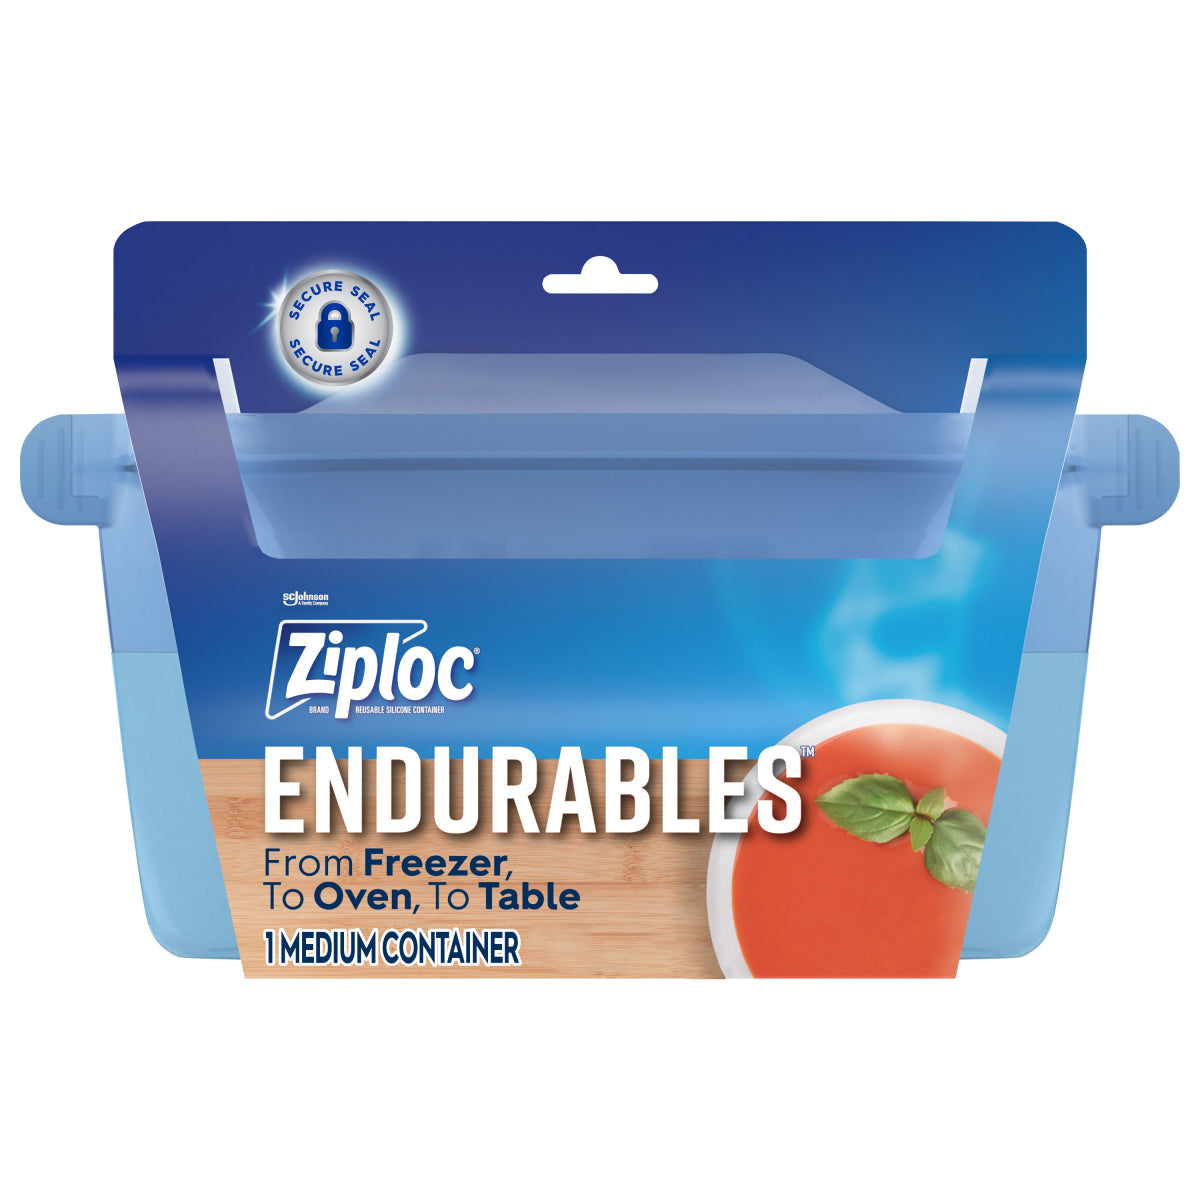 Ziploc Endurables Medium Container 4 Cups - 32oz/3pk